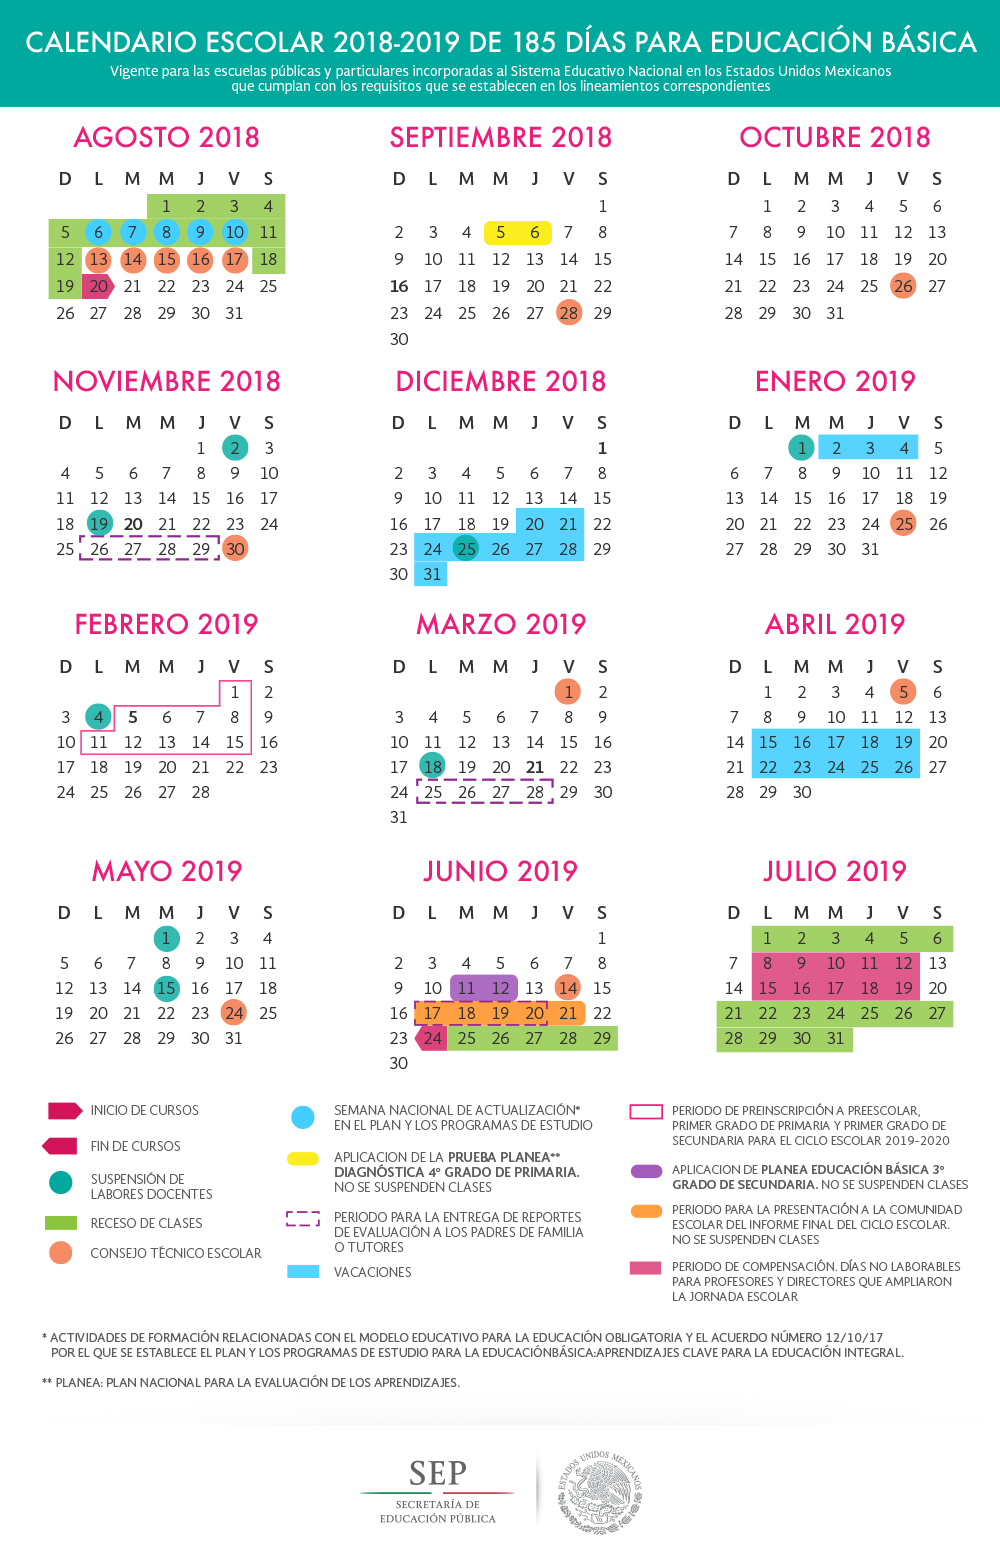 foto calendario escolar sep 2018 2019